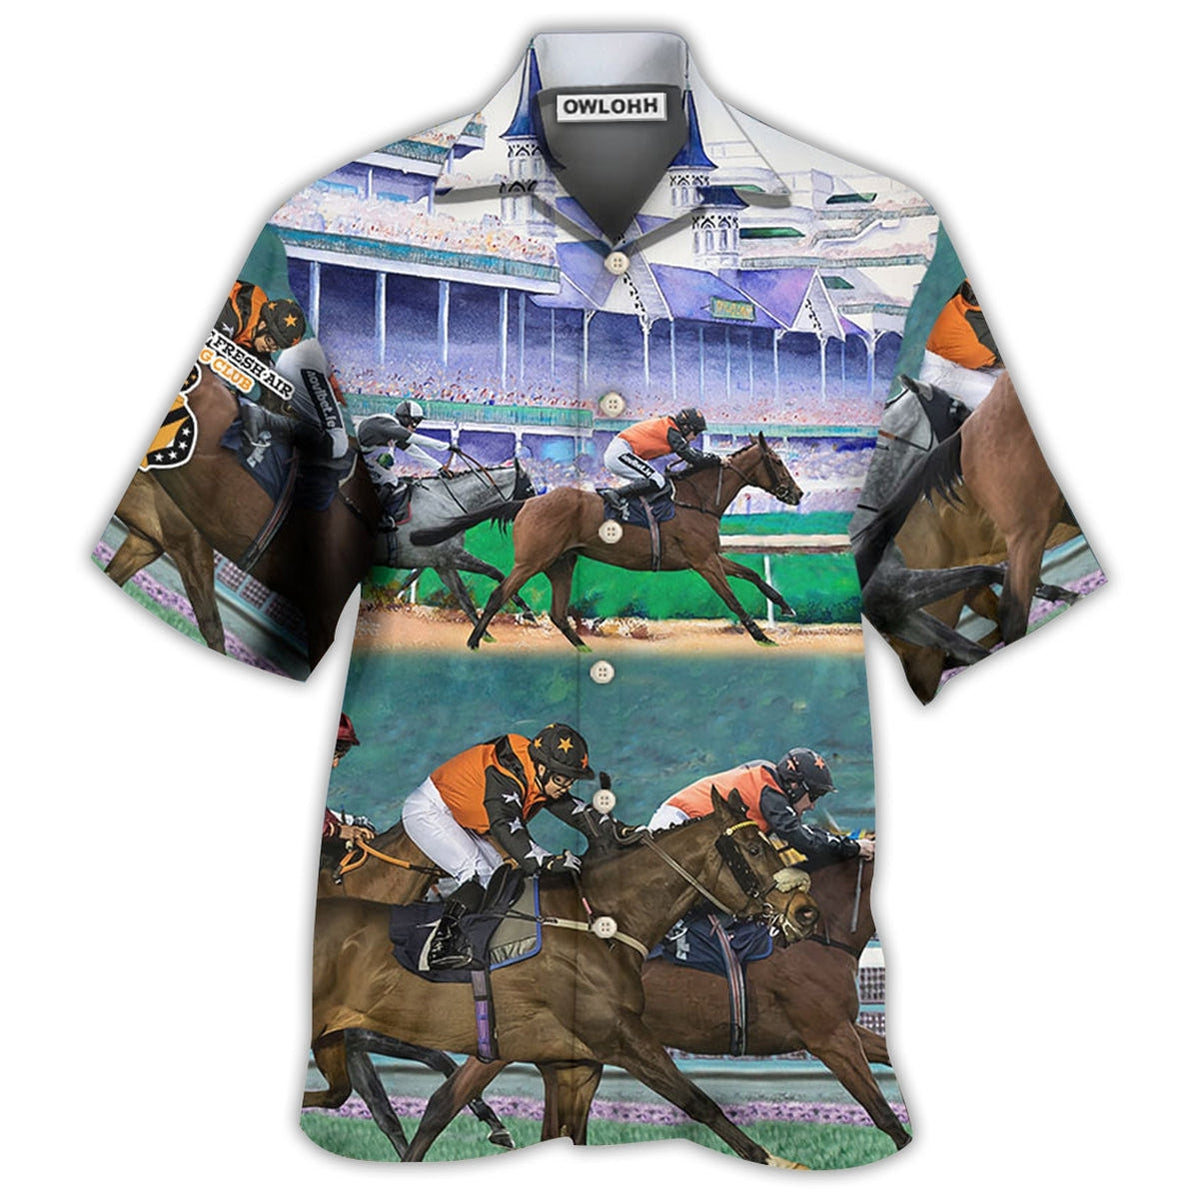 Hawaiian Shirt / Adults / S Horse Racing So Cool - Hawaiian Shirt - Owls Matrix LTD